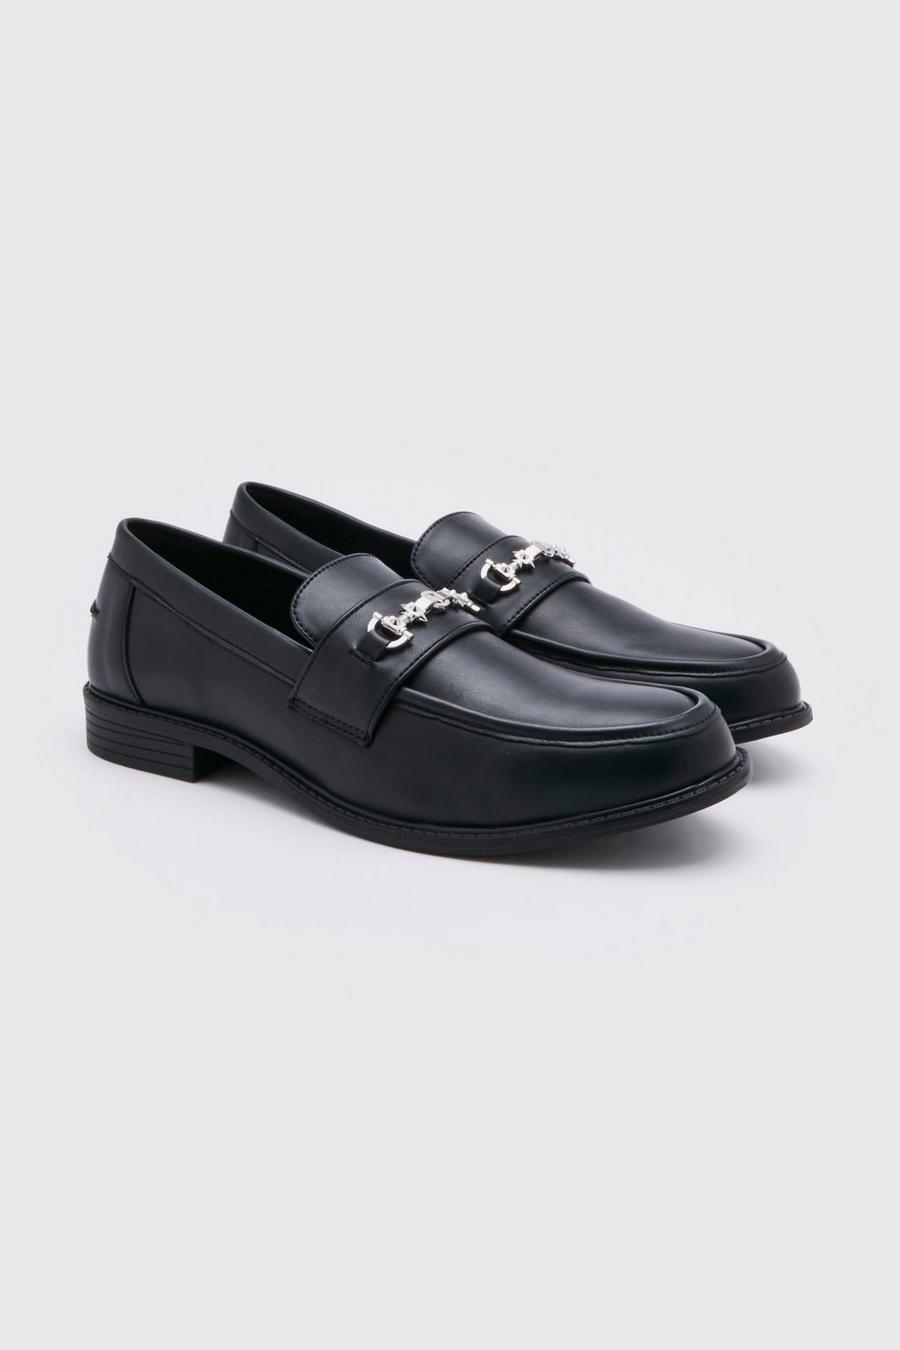 Zapatos castellanos con cadena, Black nero